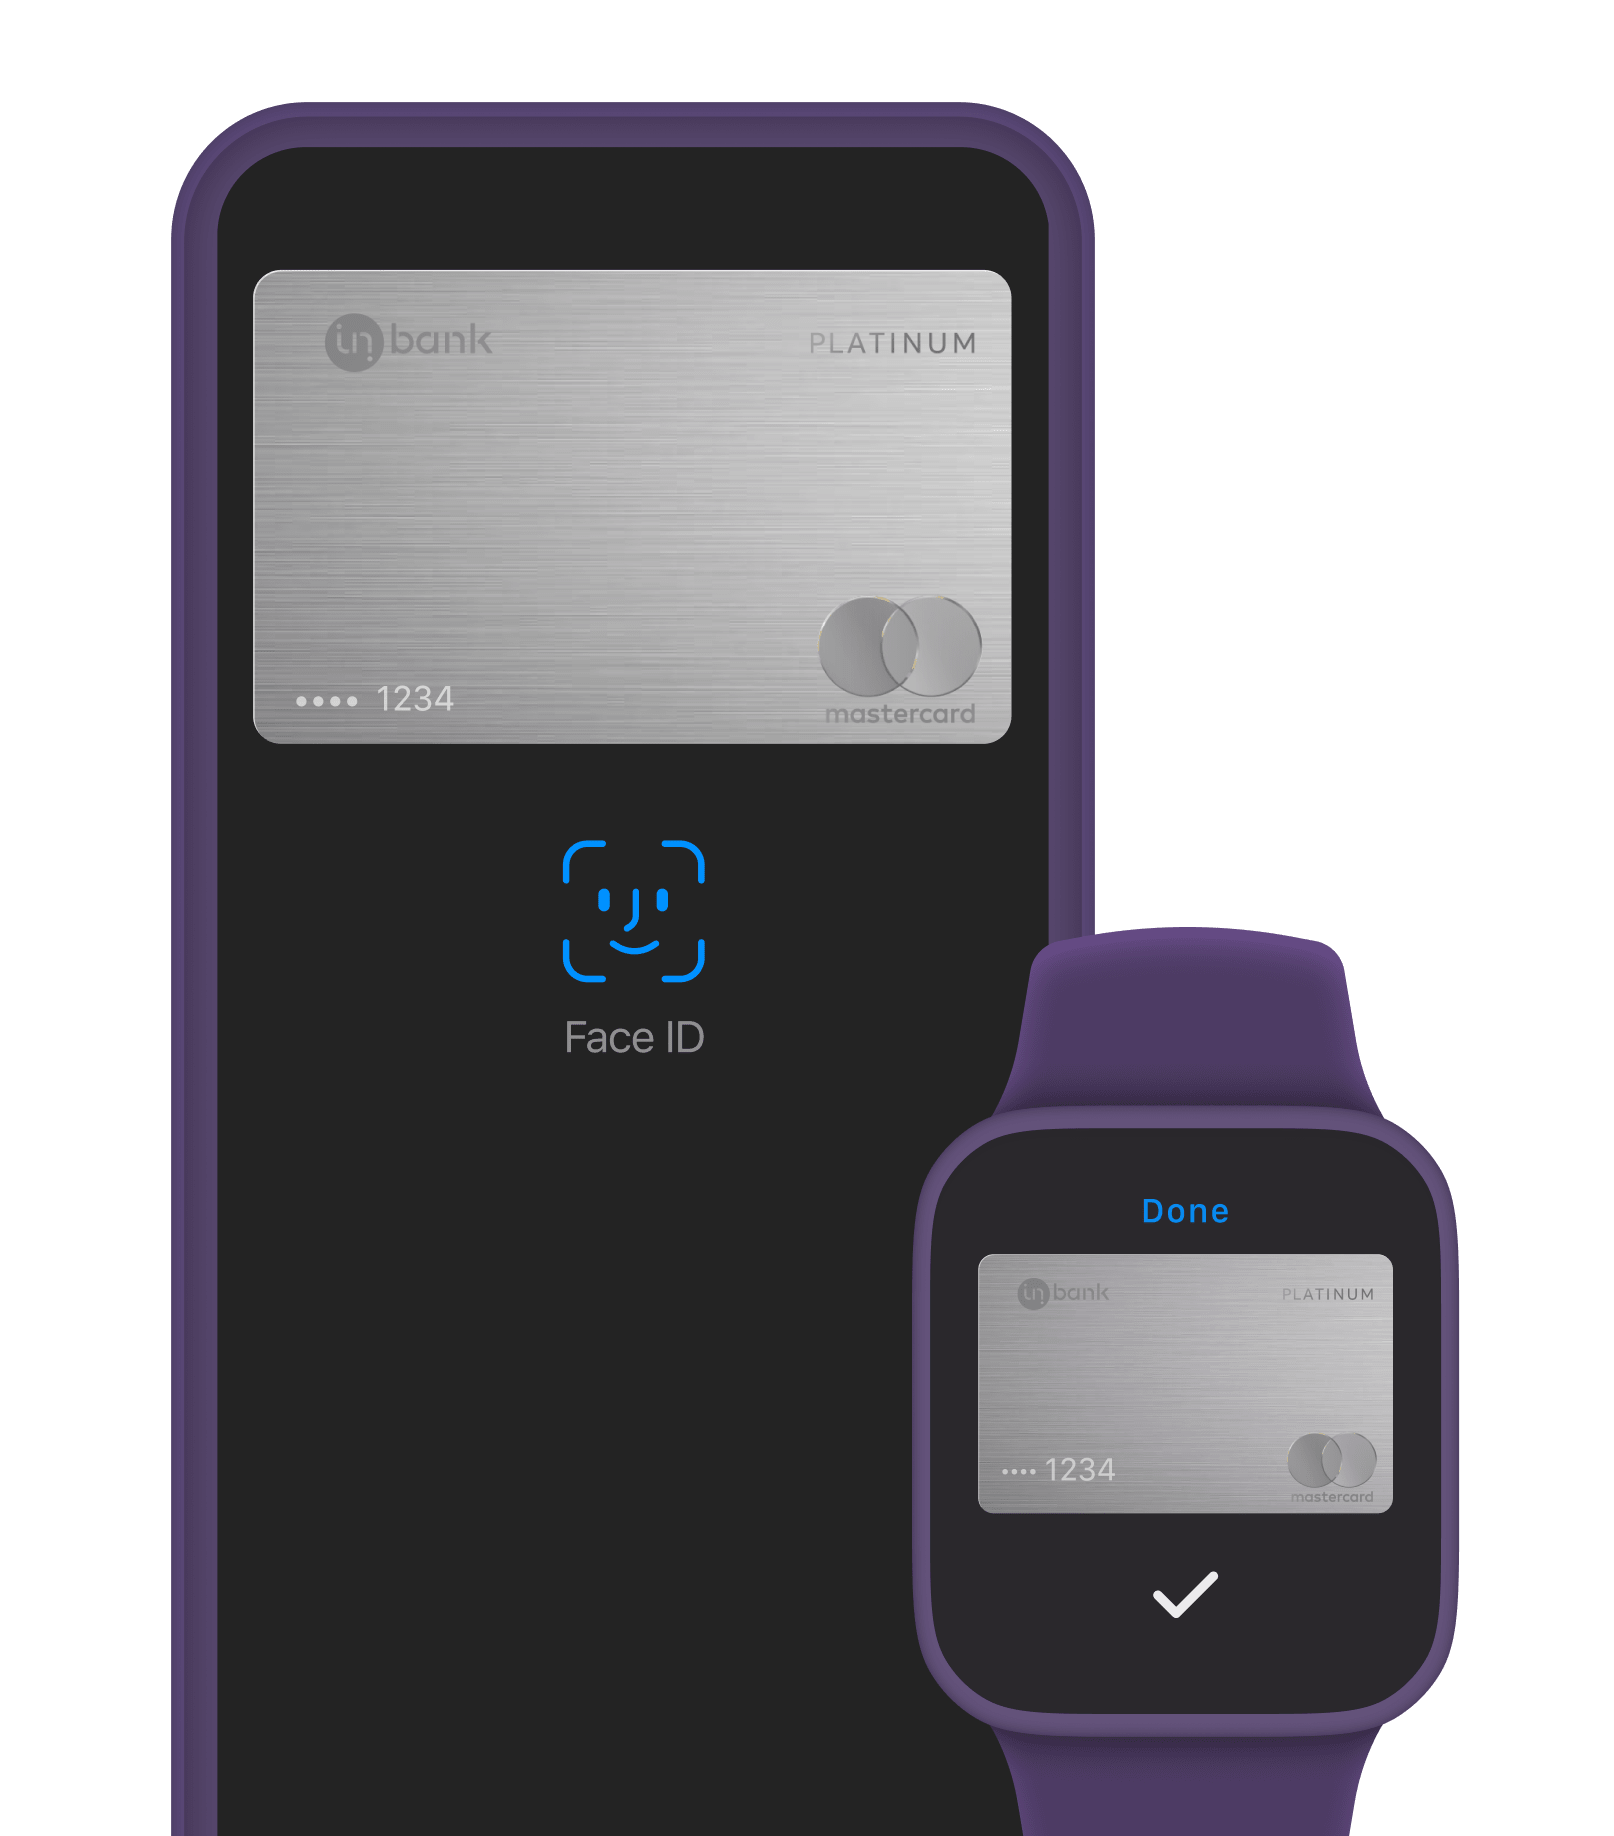 Kasuta Inbanki kaarti läbi Apple Pay maksevõimaluse. Maksevõimalus on olemas kõikides Apple'i seadmetes.